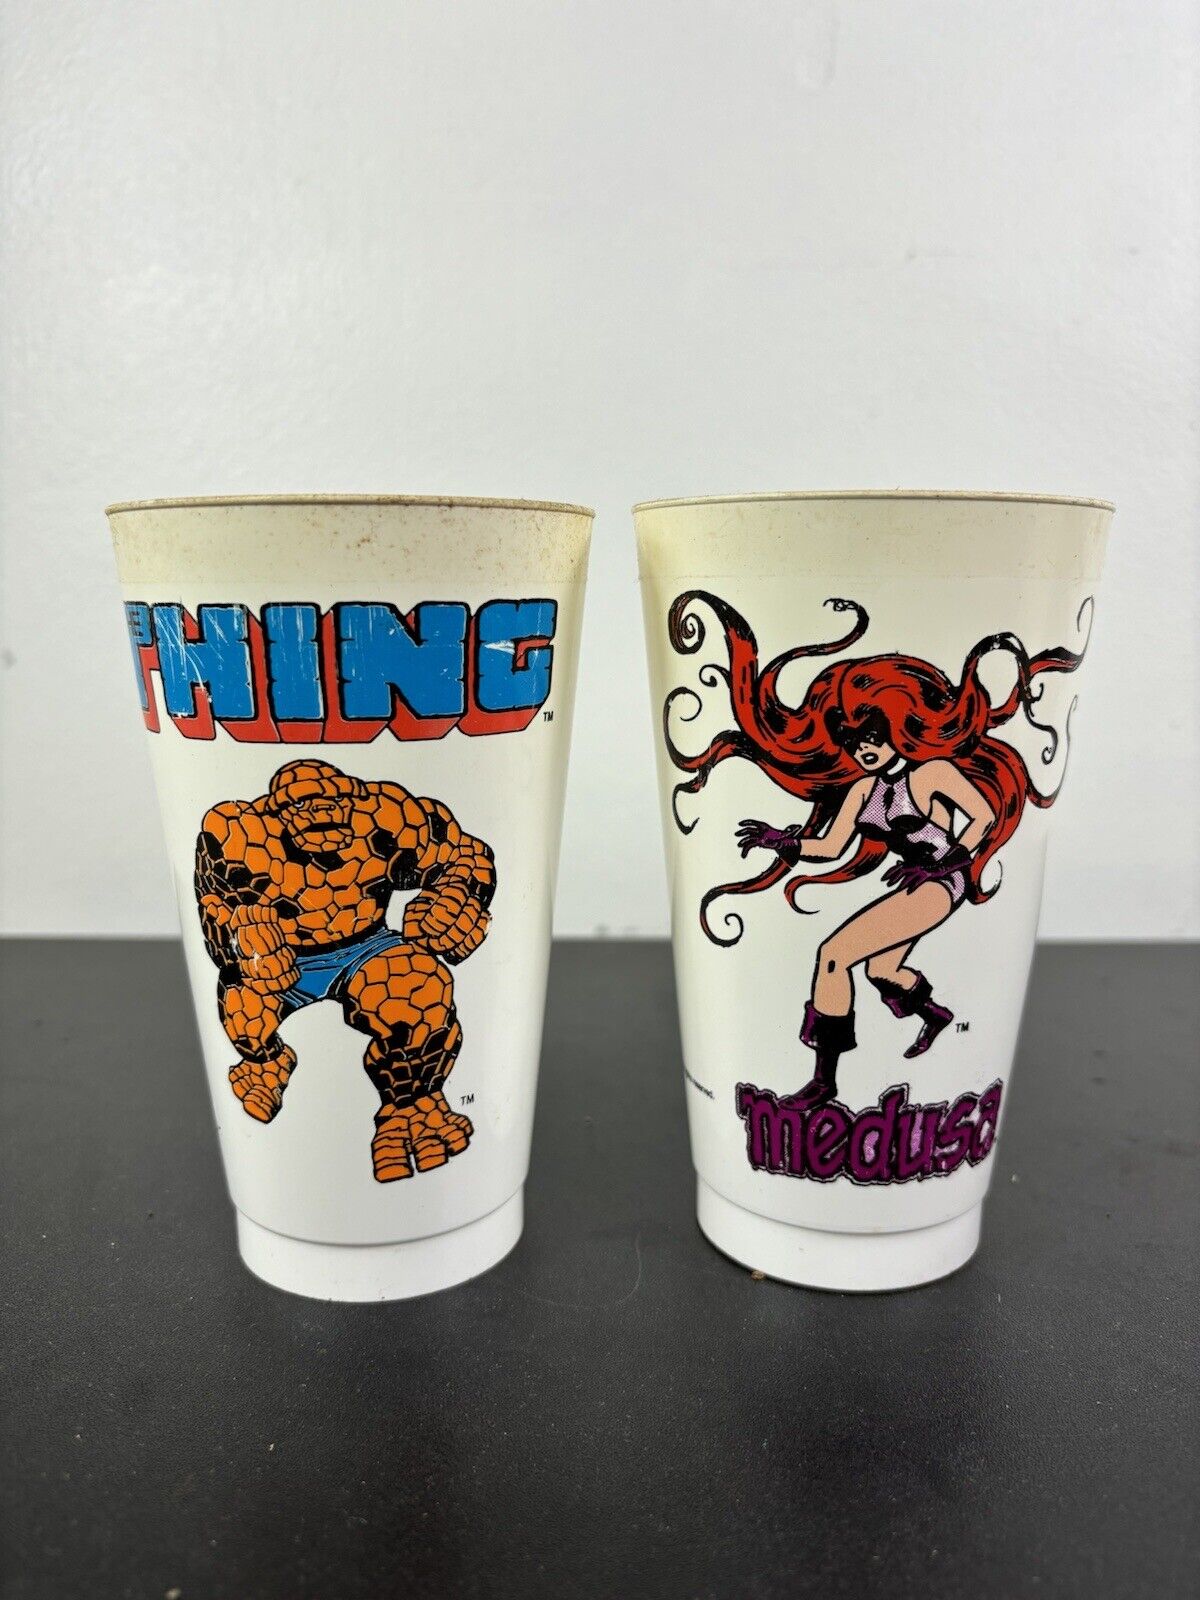 Vintage lot 2 DC MARVEL SLURPEE 7-11 cups The Thing & Medusa 7/11